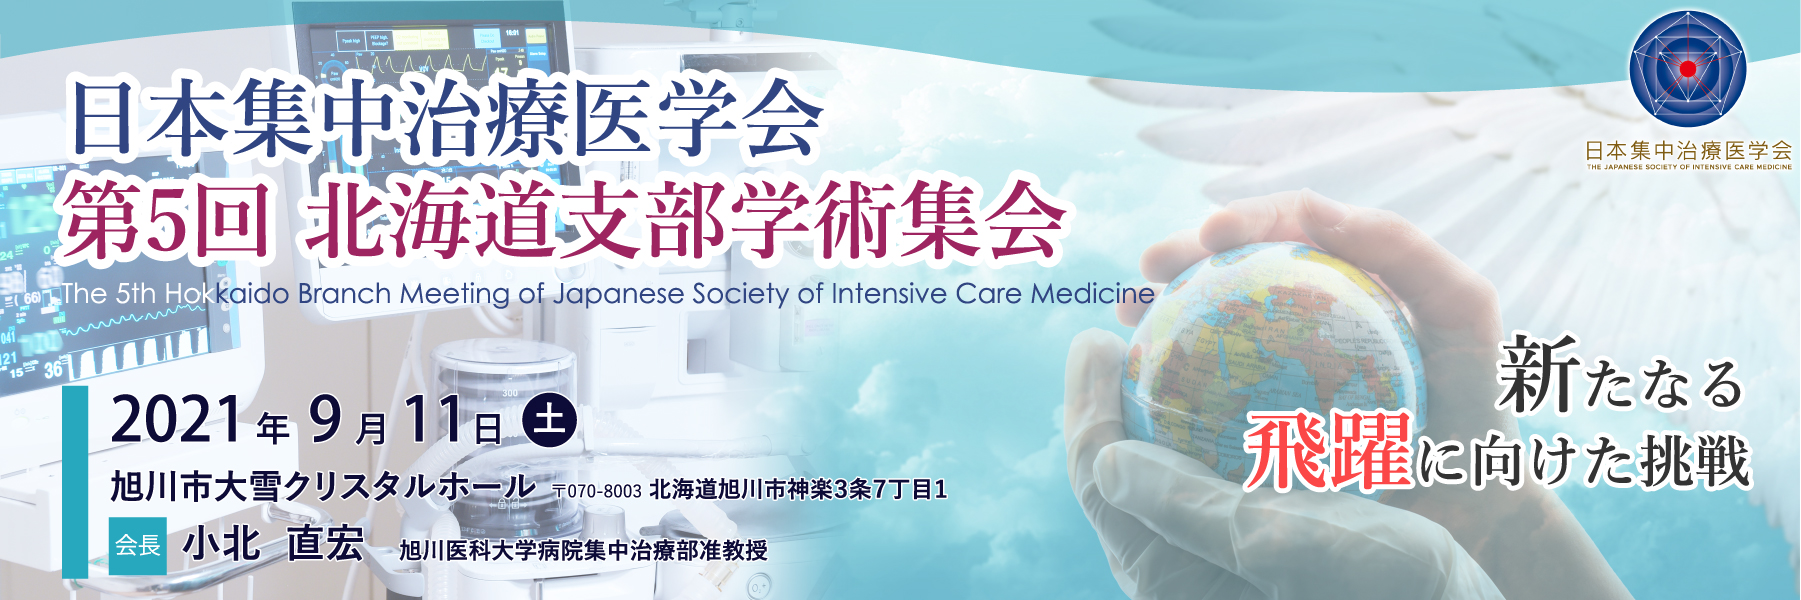 日本集中治療医学会第5回北海道支部学術集会